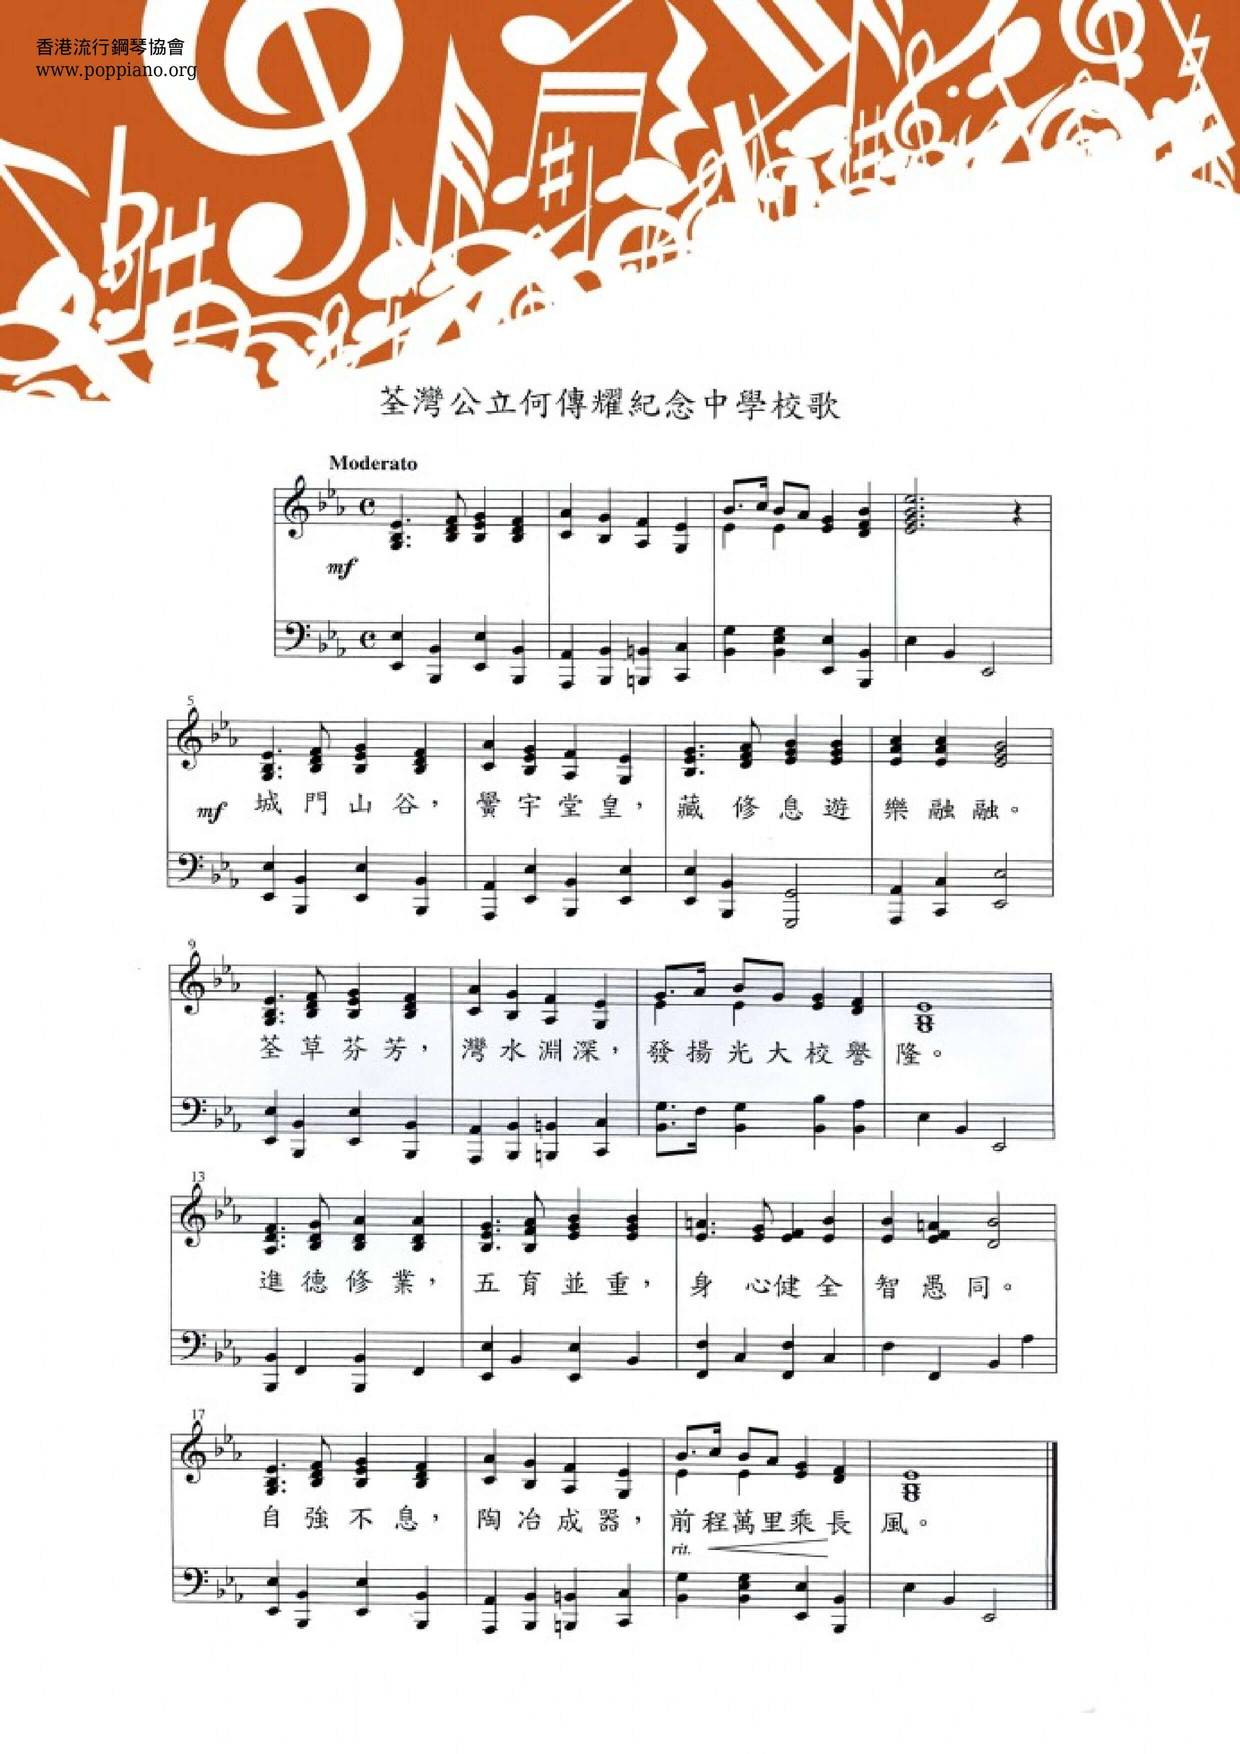 Tsuen Wan Public Ho Chuan Yew Primary School School Song Score